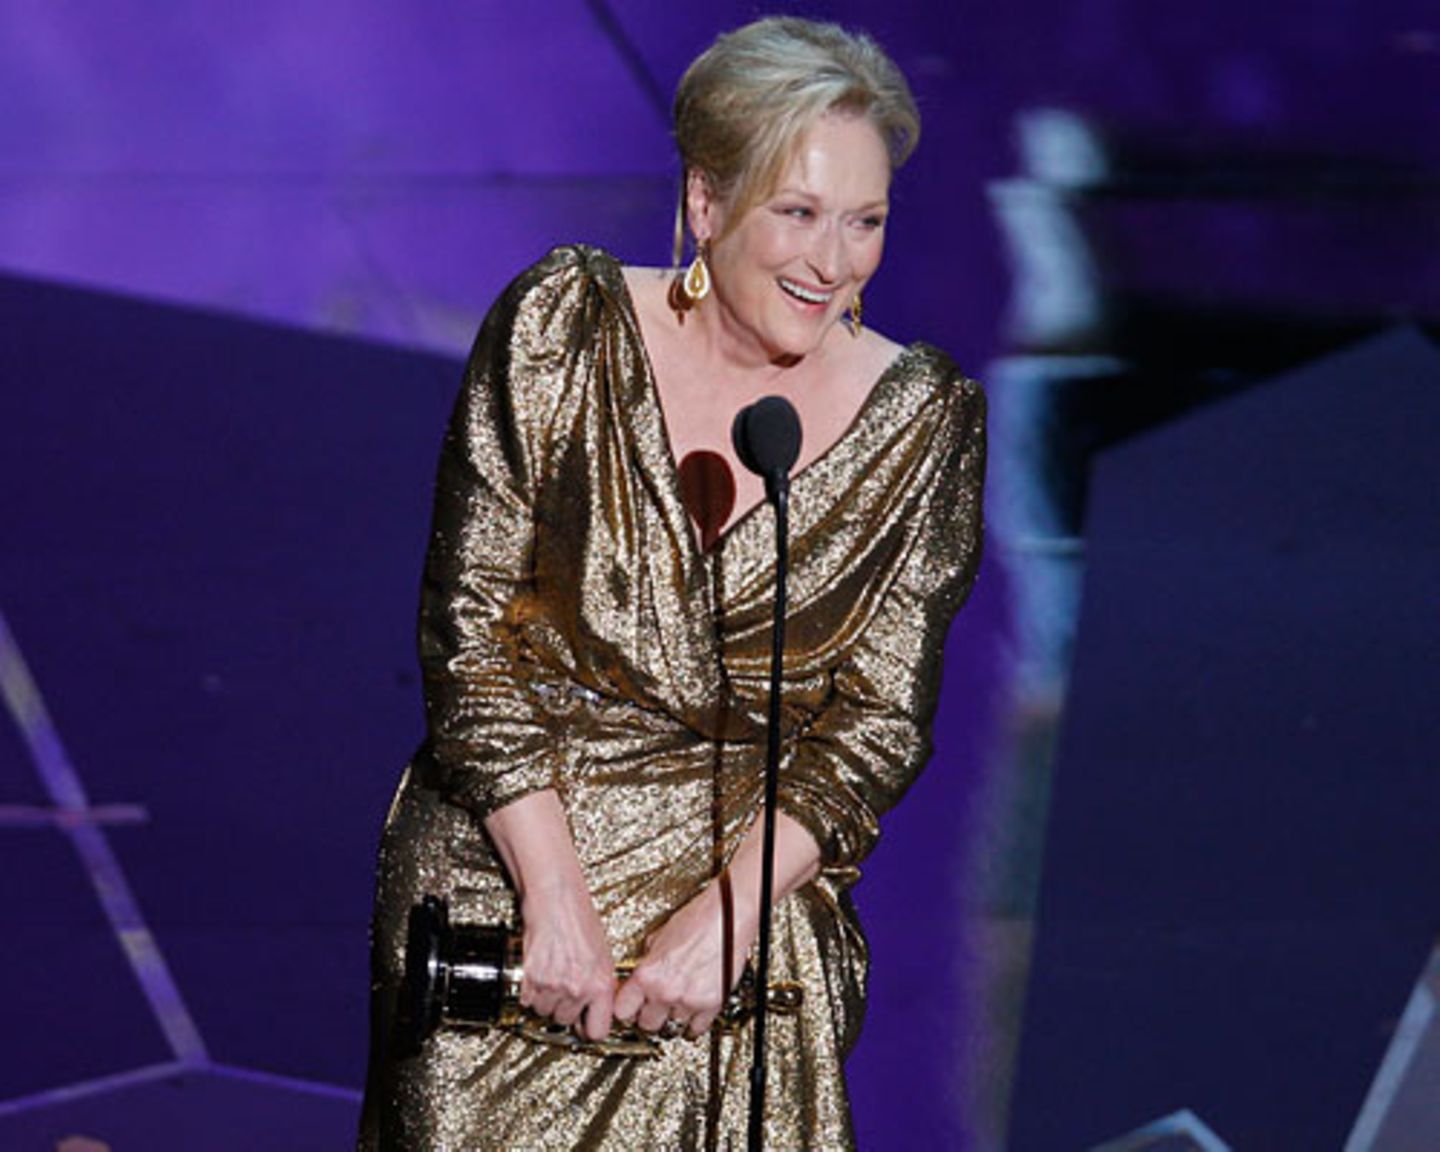 Ihre 17. Oscar-Nominierung brachte Meryl Streep den dritten Oscar ihrer Karriere. Mit ihrer tollen Performance als Maggie Thatcher in "Die Eiserne Lady" galt sie als Favoritin auf den Preis als beste Hauptdarstellerin. Passenderweise hatte sich Meryl Streep auch gleich in Gold gewandet. Wir finden: Absolut angemessen, der Oscar für Maggie-Meryl. Streep selbst hatte in ihrer Dankesrede befürchtet, halb Amerika würde jetzt aufstöhnen und sagen: "Oh no, die schon wieder". Wir sagen: Schön, endlich sie mal wieder. Streeps letzter Oscar-Gewinn ist schließlich schon 29 Jahre her. Die Oscar-Stilkritik: Wer war top, wer trug flop? Mehr bei BRIGITTE-woman.de: Meryl Streep: Ihre schönsten Rollen Der Stil von Meryl Streep